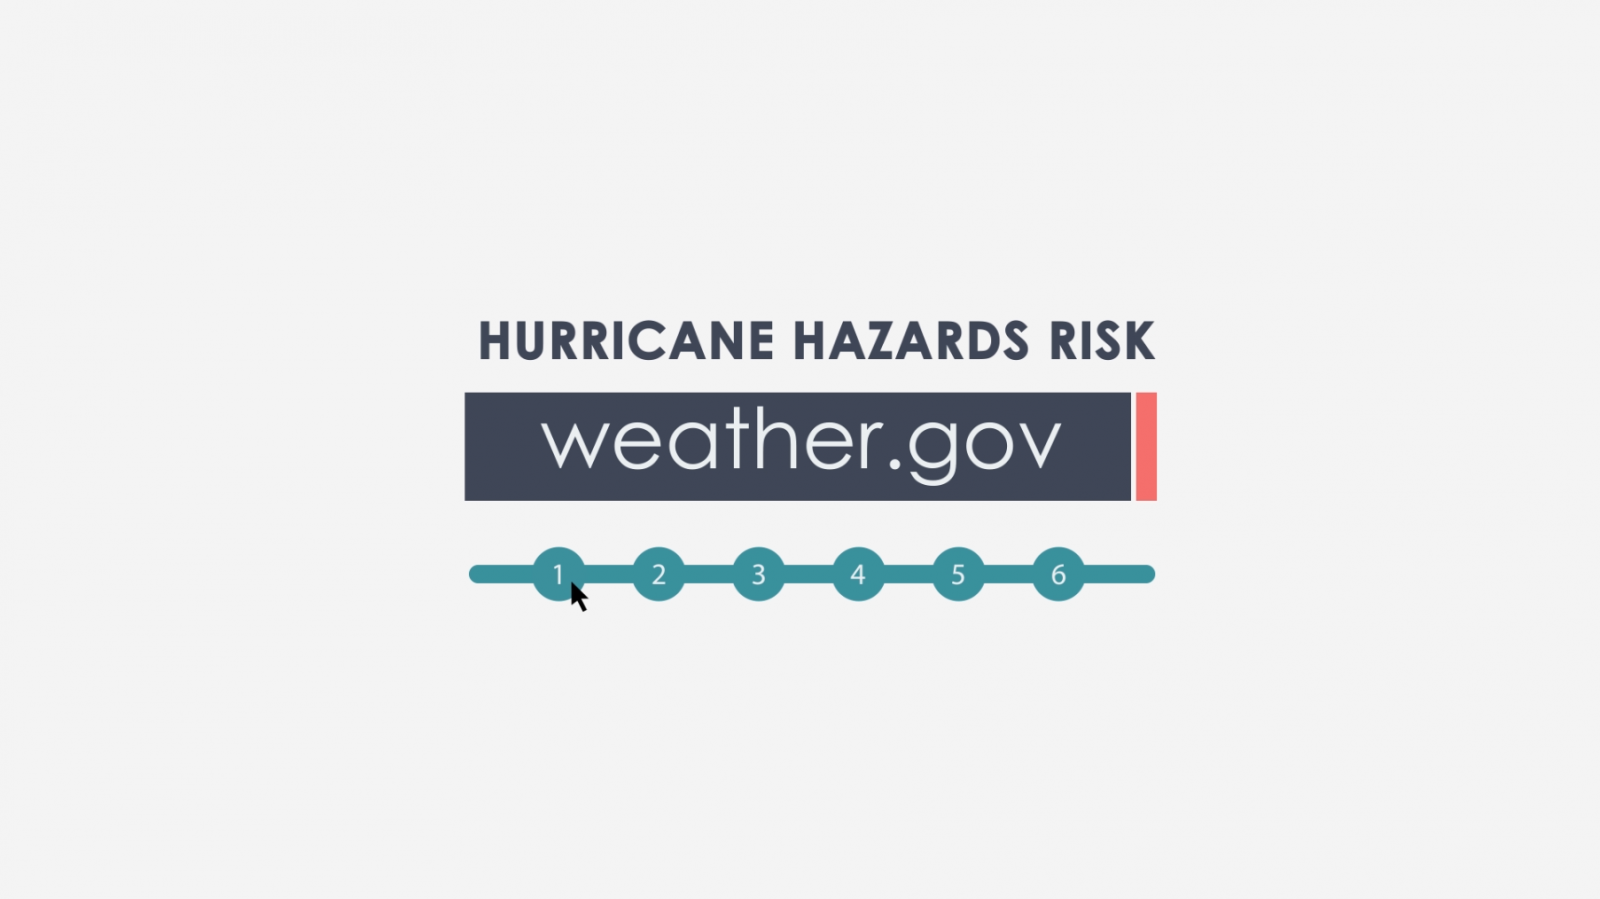 Video Link: Hurricane Hazards Risk